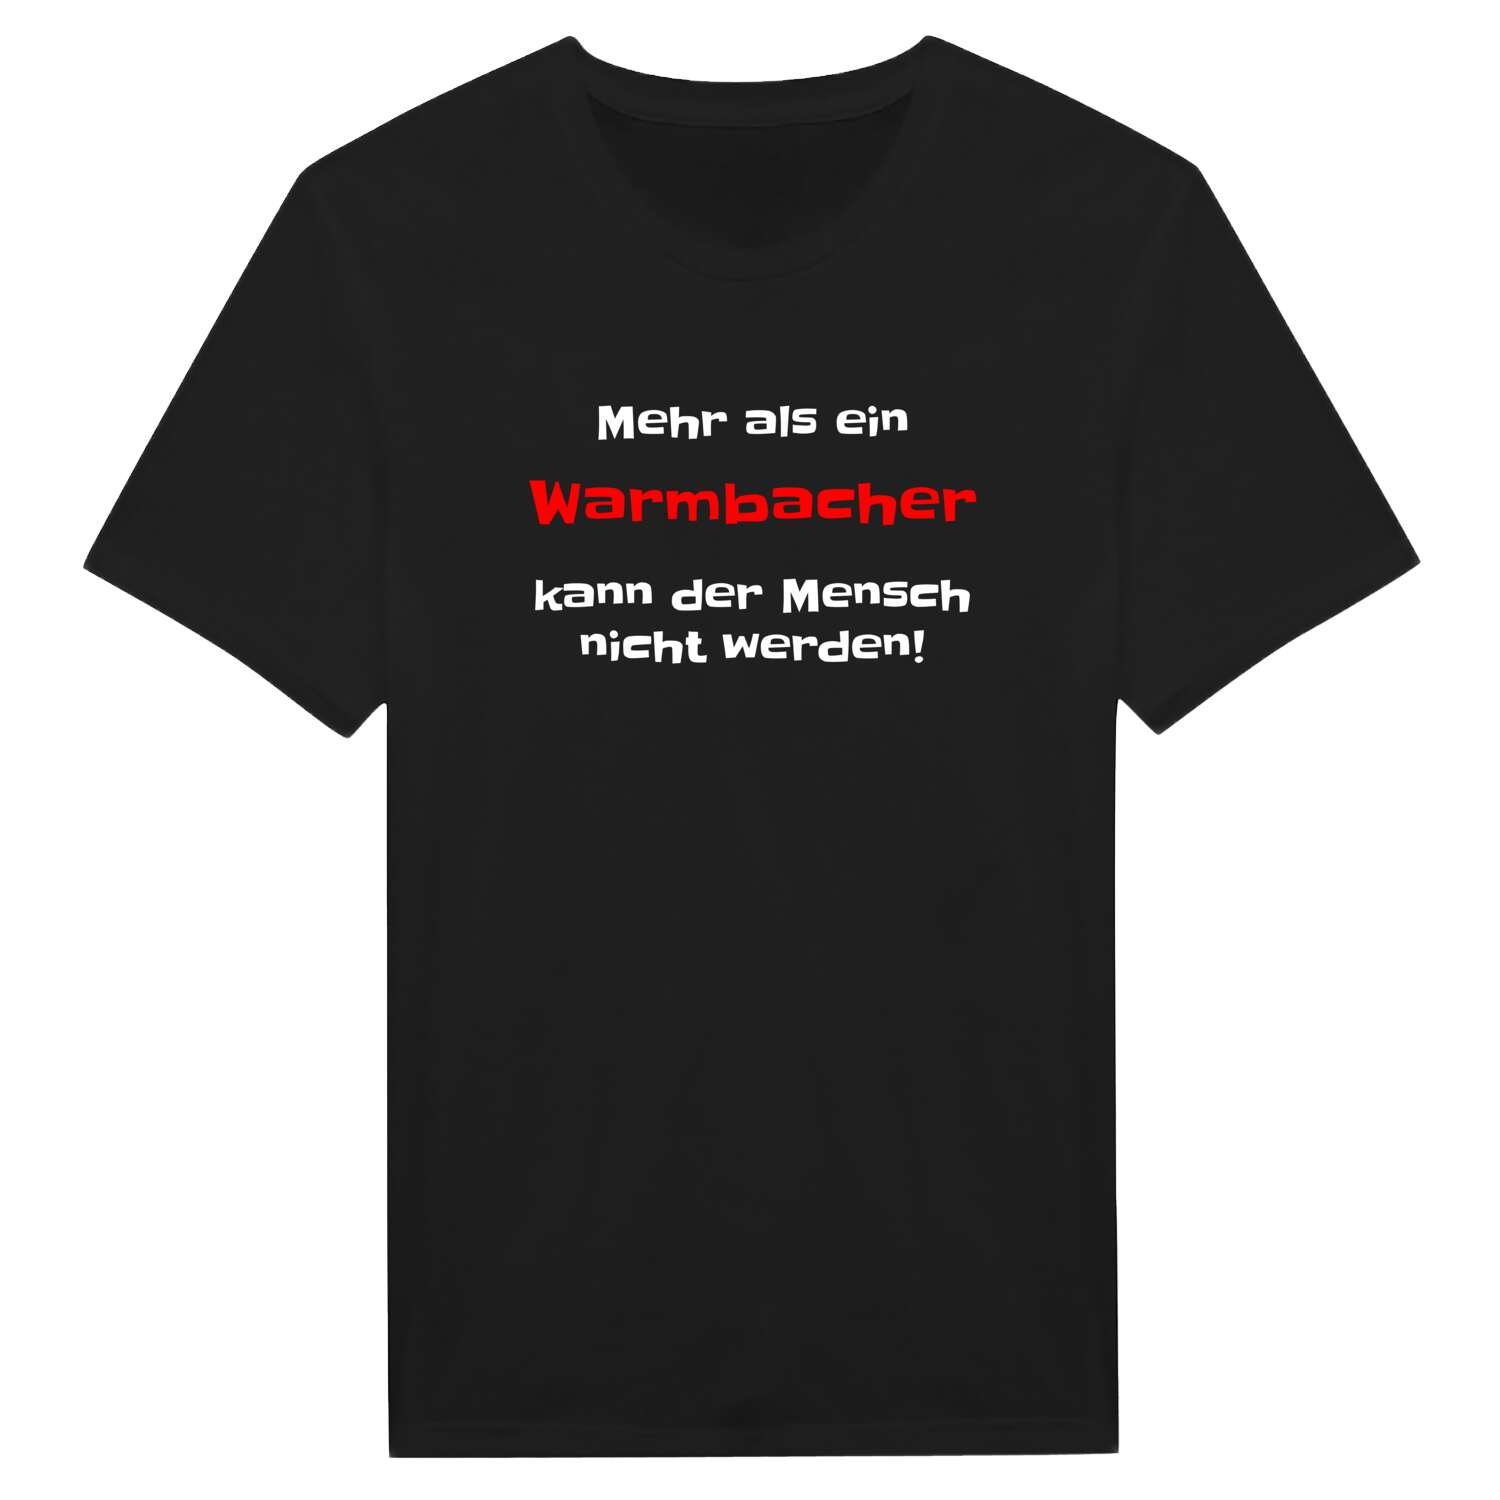 Warmbach T-Shirt »Mehr als ein«